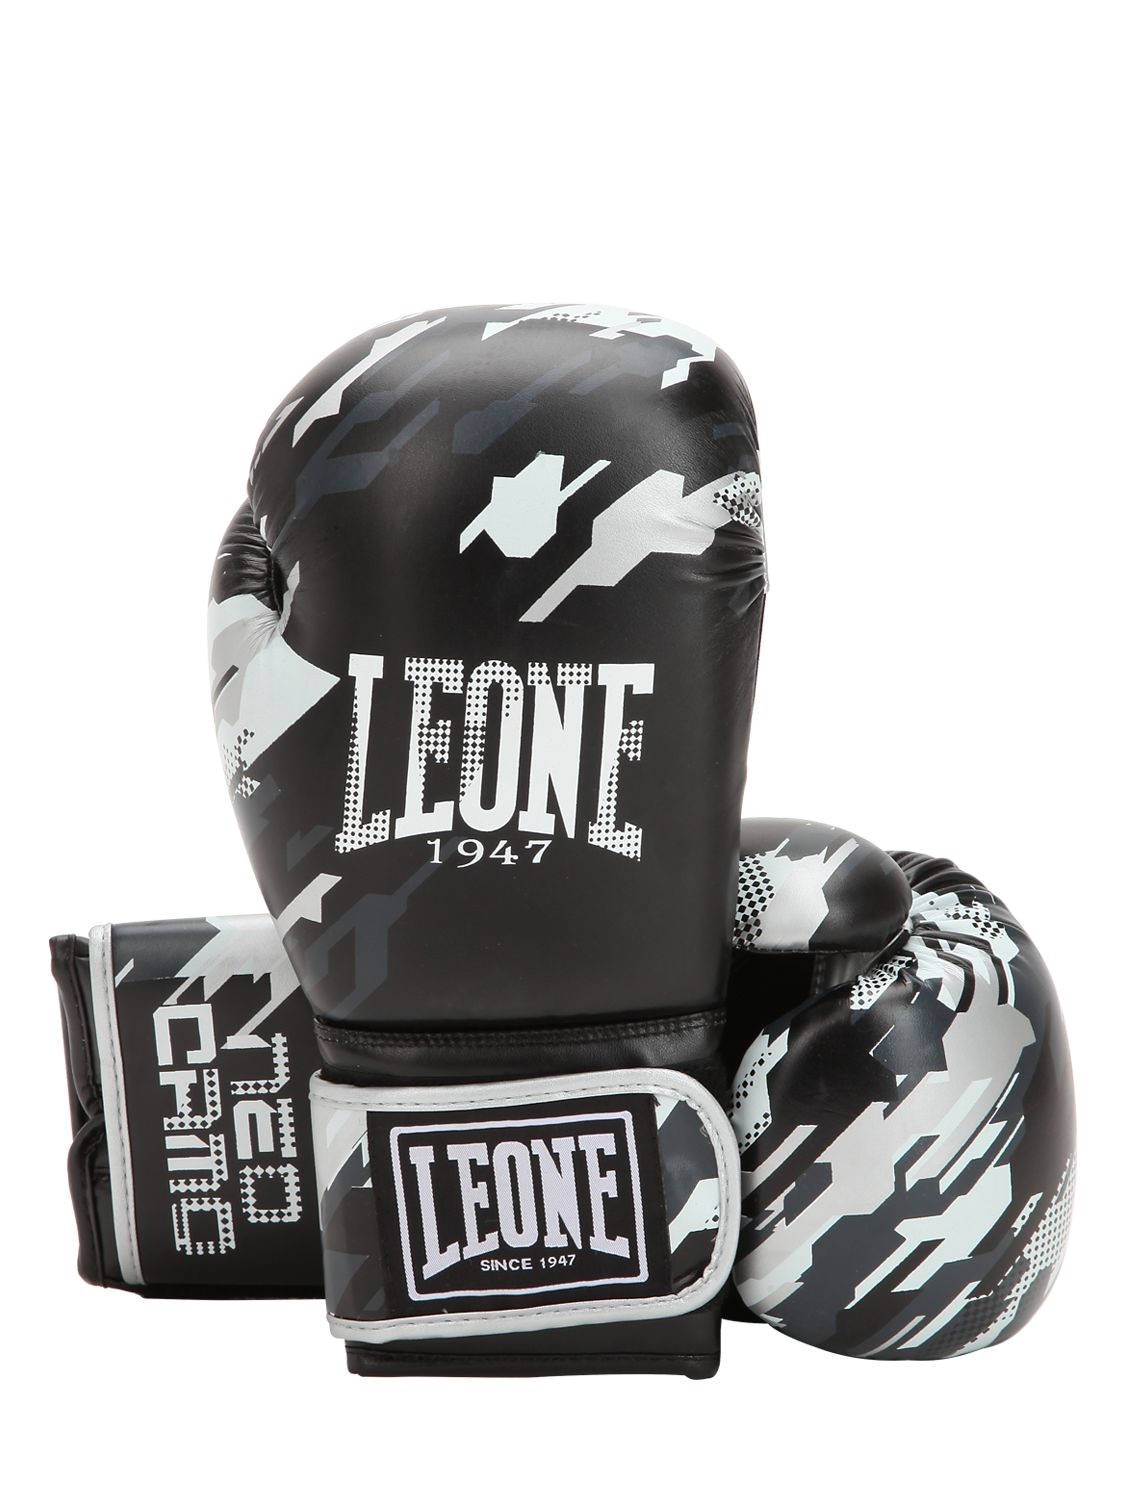 Leone 1947 10 oz Neo Camo Faux Leather Boxing Glove In Grey Camo